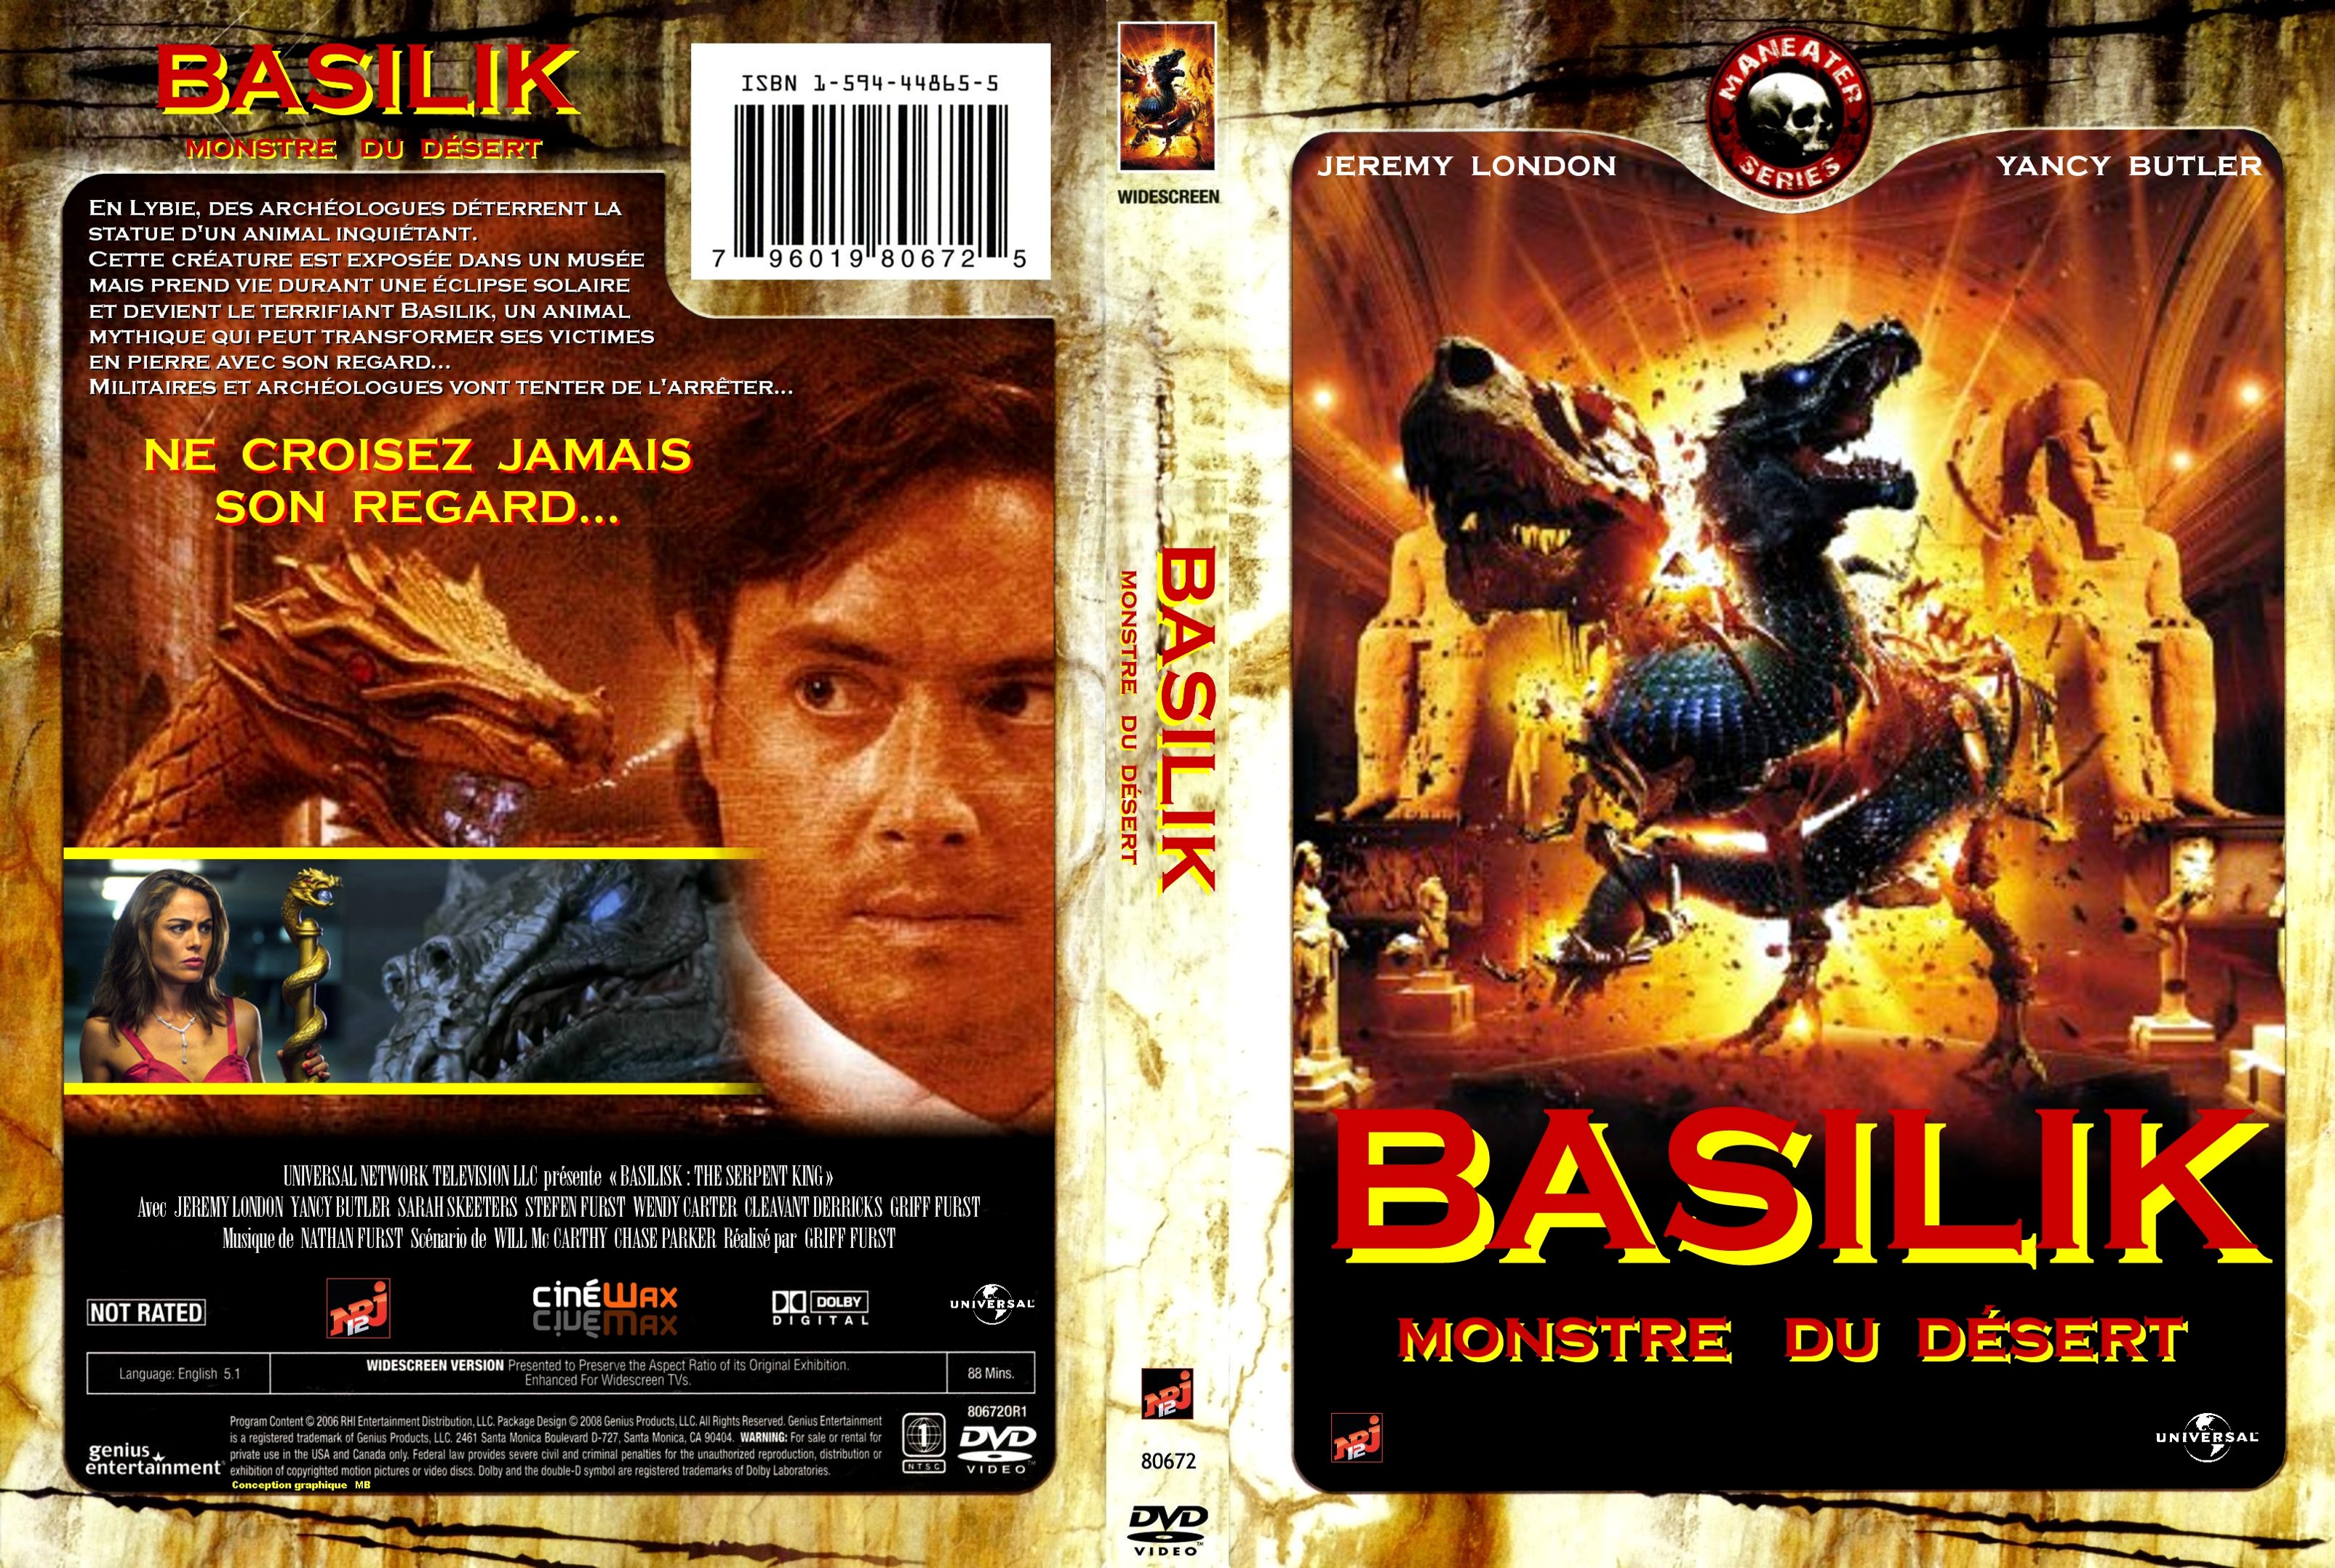 Jaquette DVD Basilik monstre du dsert custom